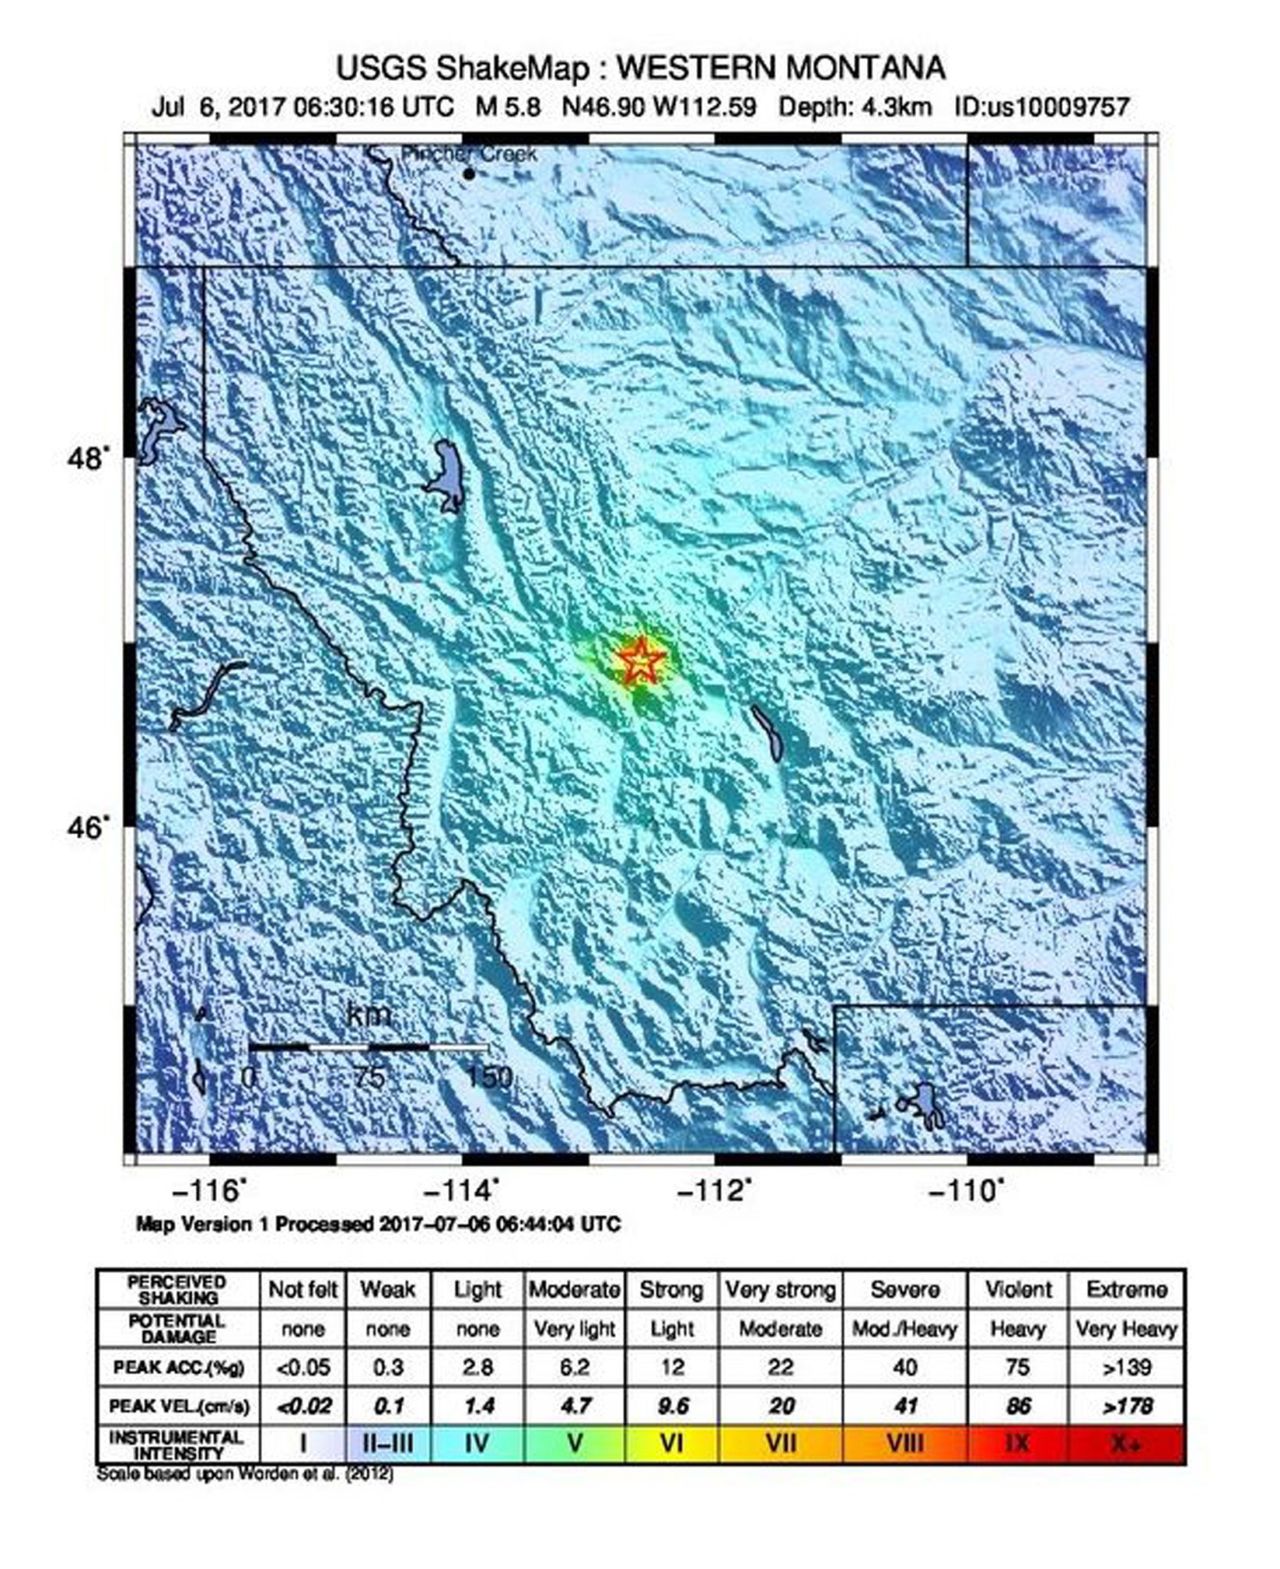 USA: trzęsienie ziemi o sile 5,8 magnitudy